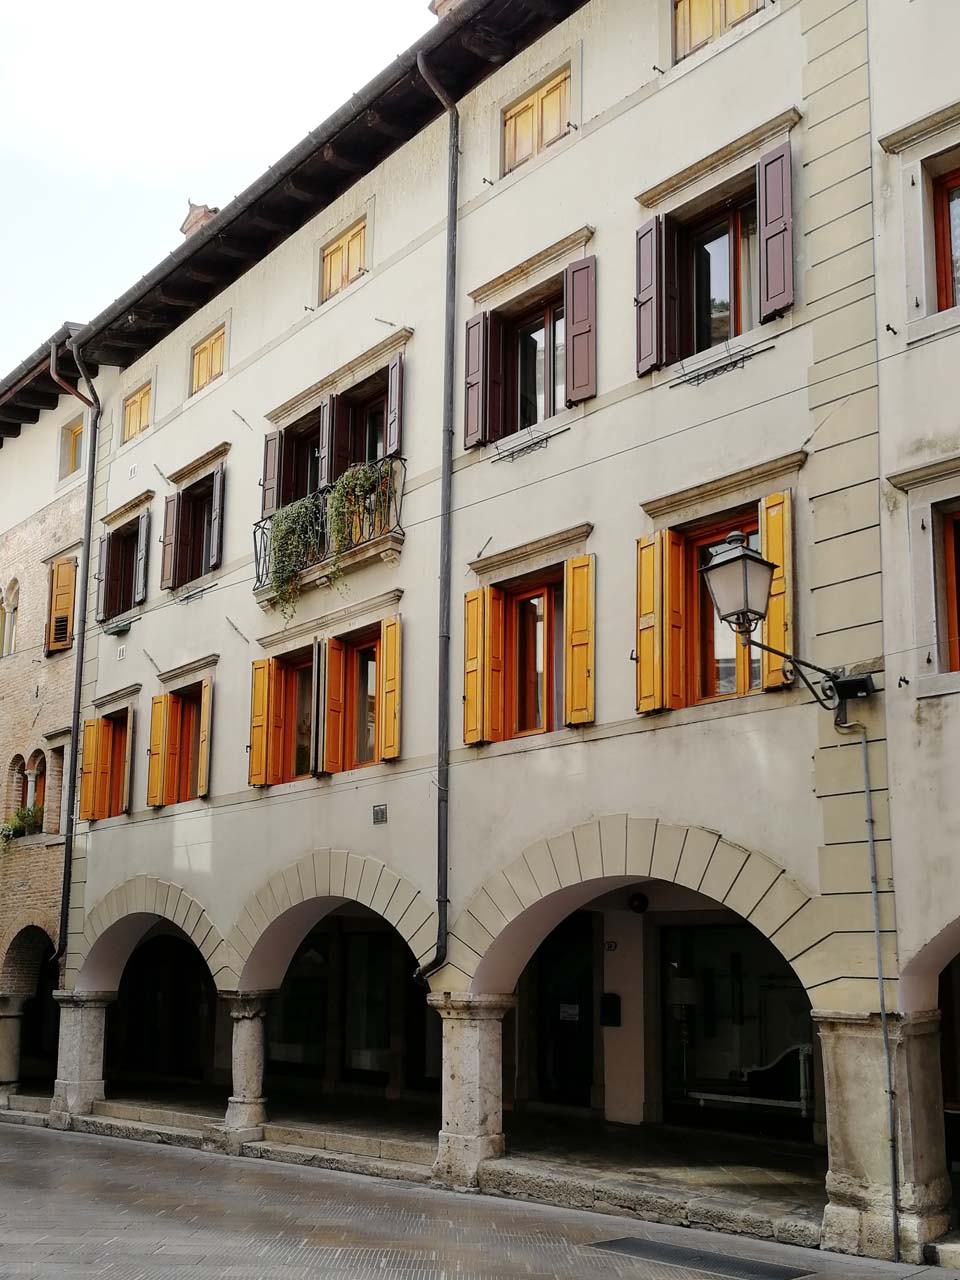 Immobile sito in Via Bini 8, 10 (ora civici 12, 14) (palazzetto) - Gemona del Friuli (UD) 